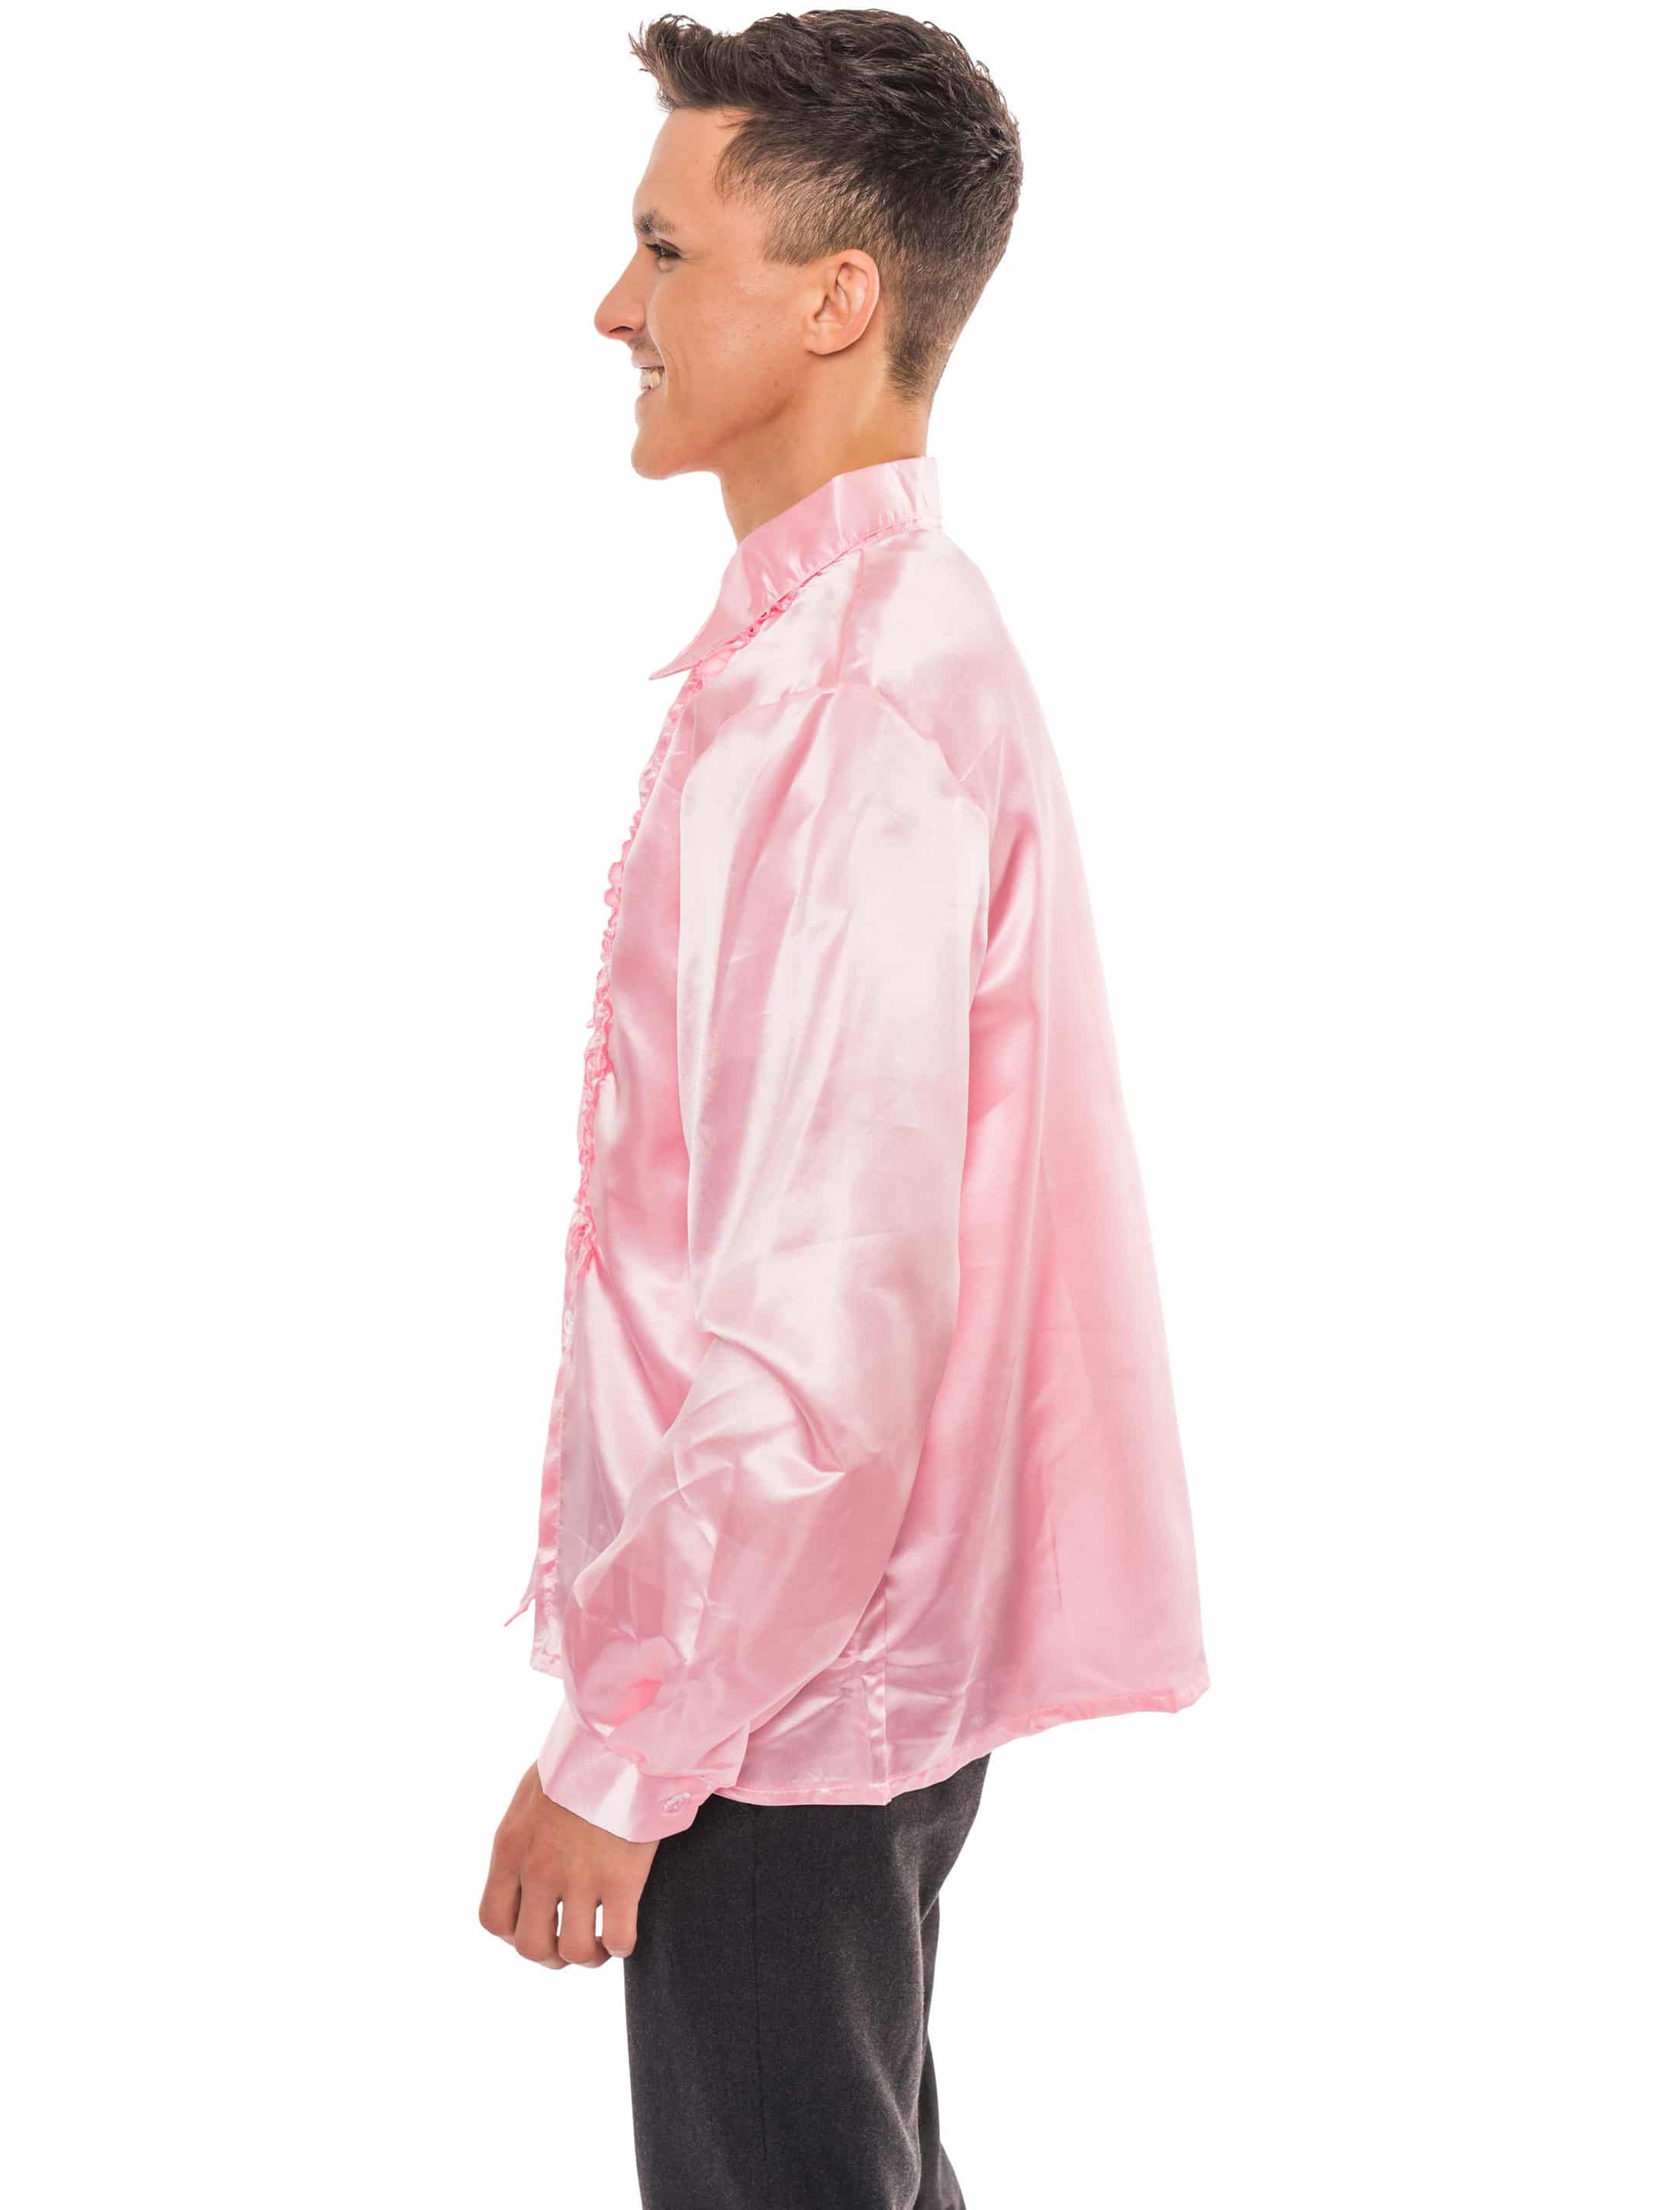 Discohemd Herren pink XL